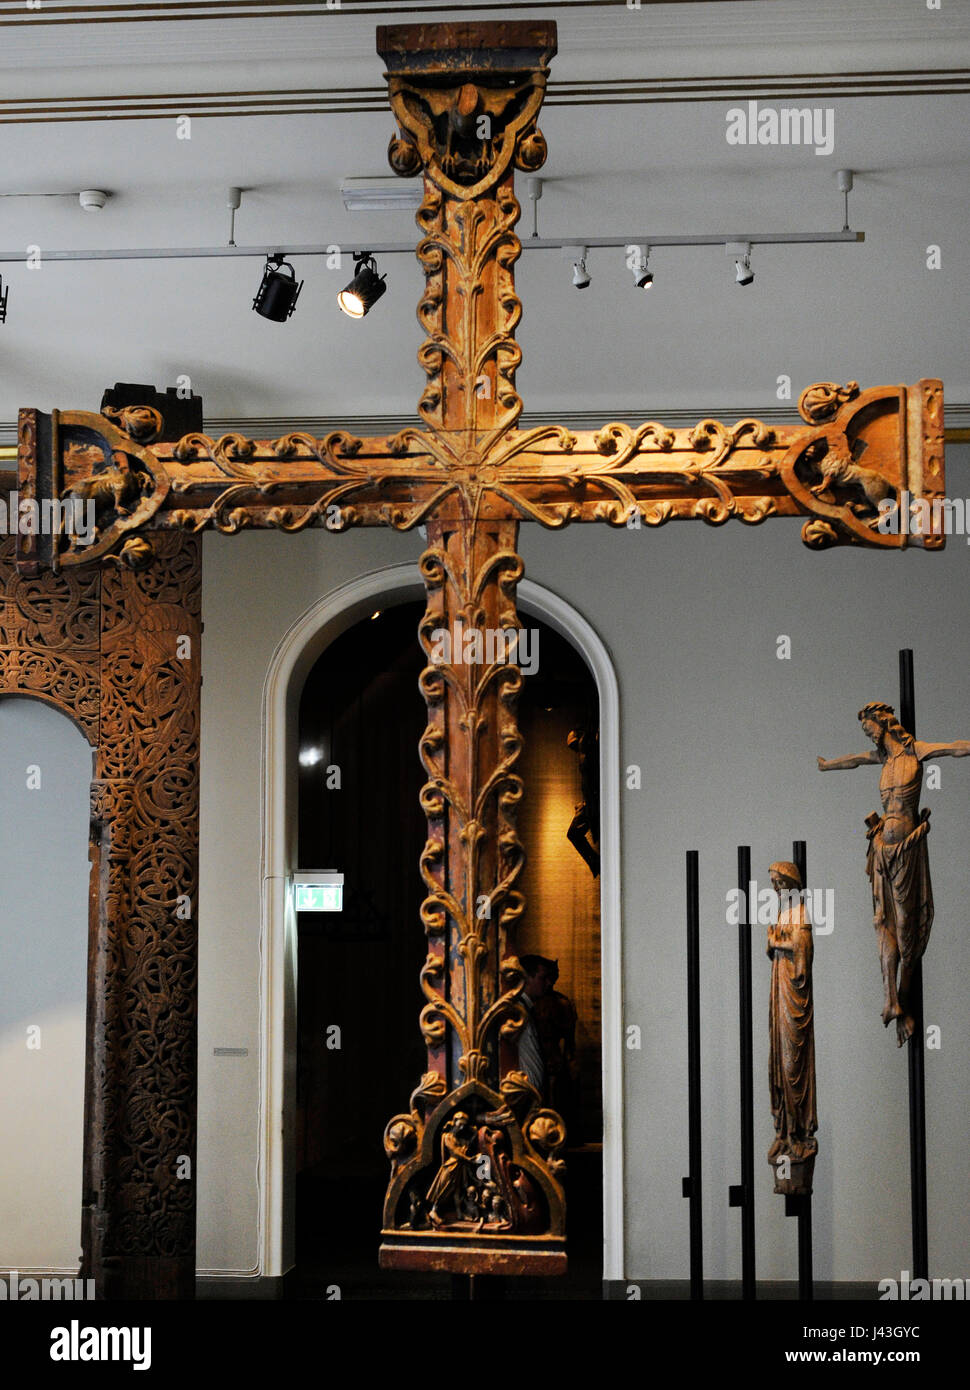 Croix en bois. Église de Borre, Vestfold, c. 1275-1300. Musée historique. Oslo. La Norvège. Banque D'Images